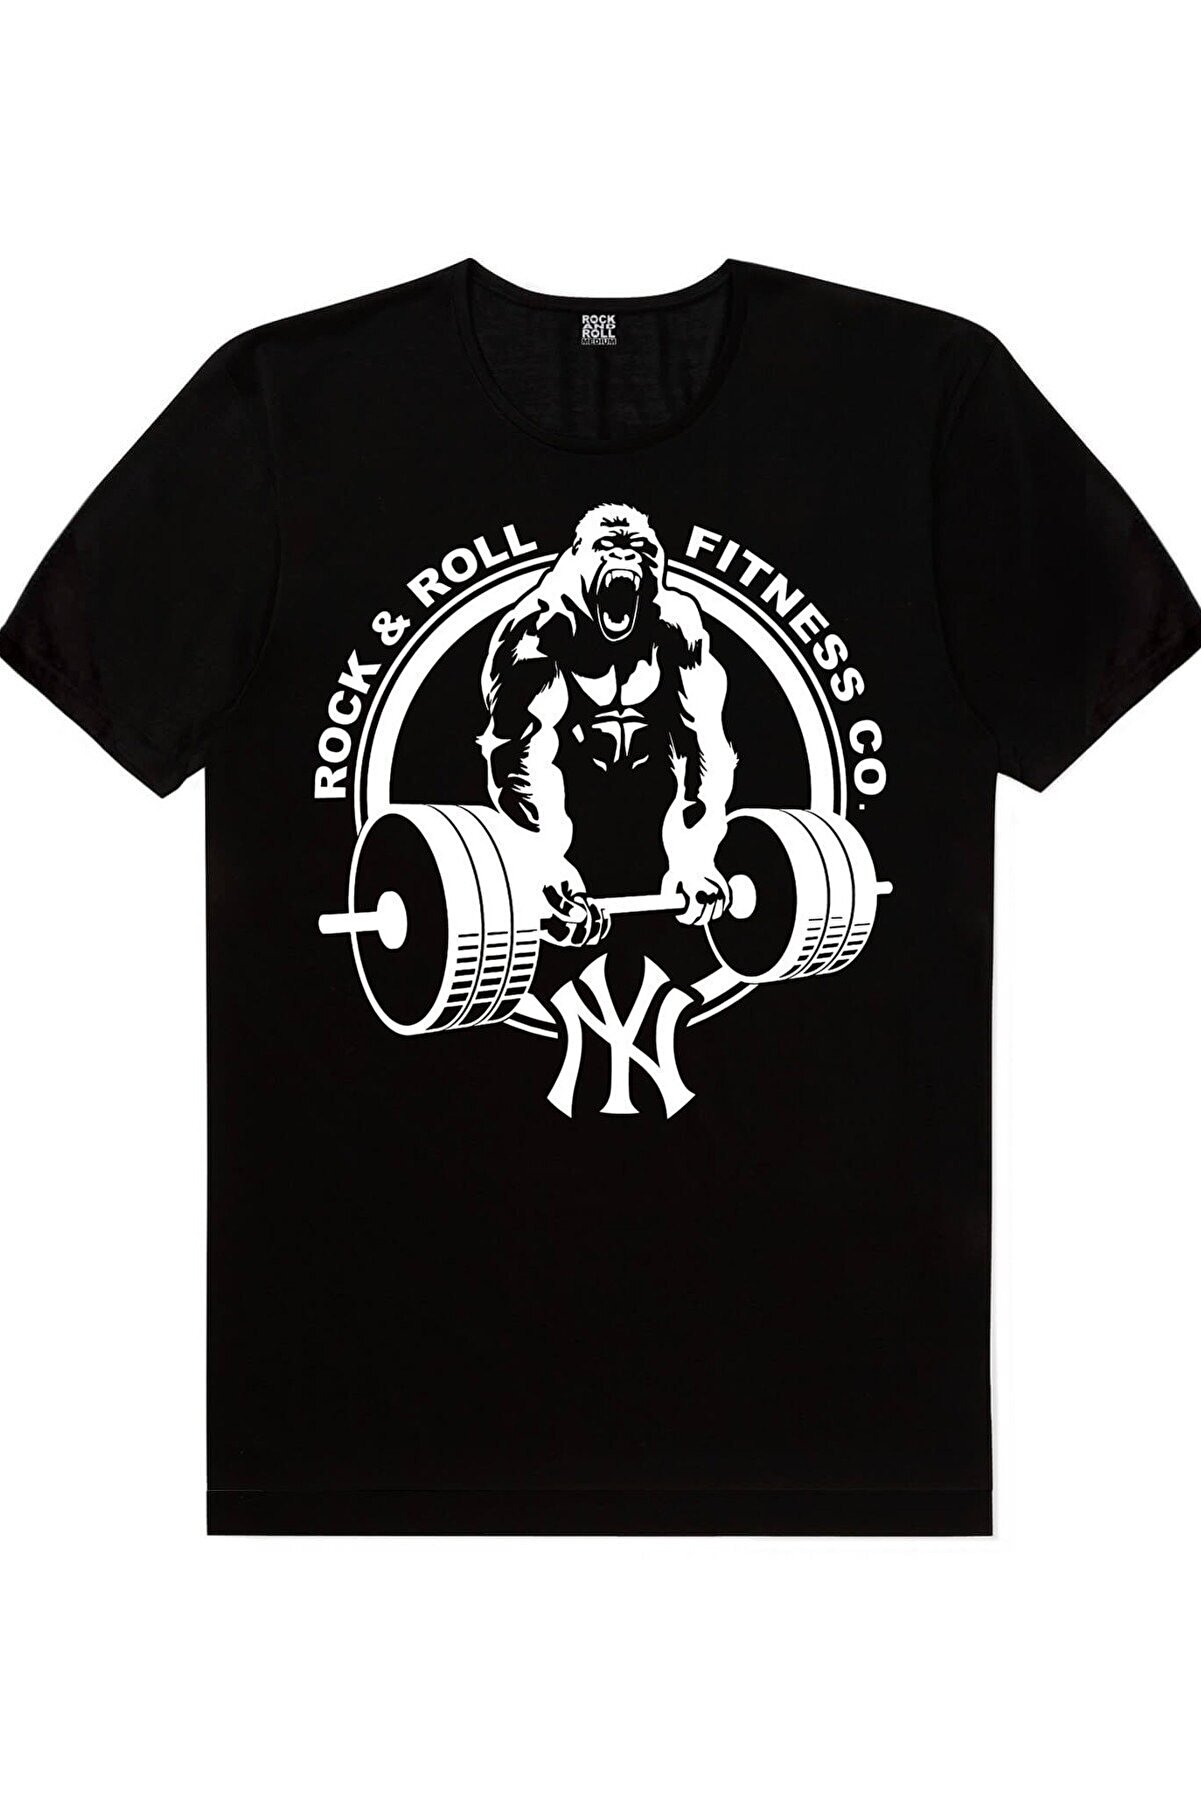 Golds Gym, Gorilla Gym Erkek 2'li Eko Fitness Paket T-shirt